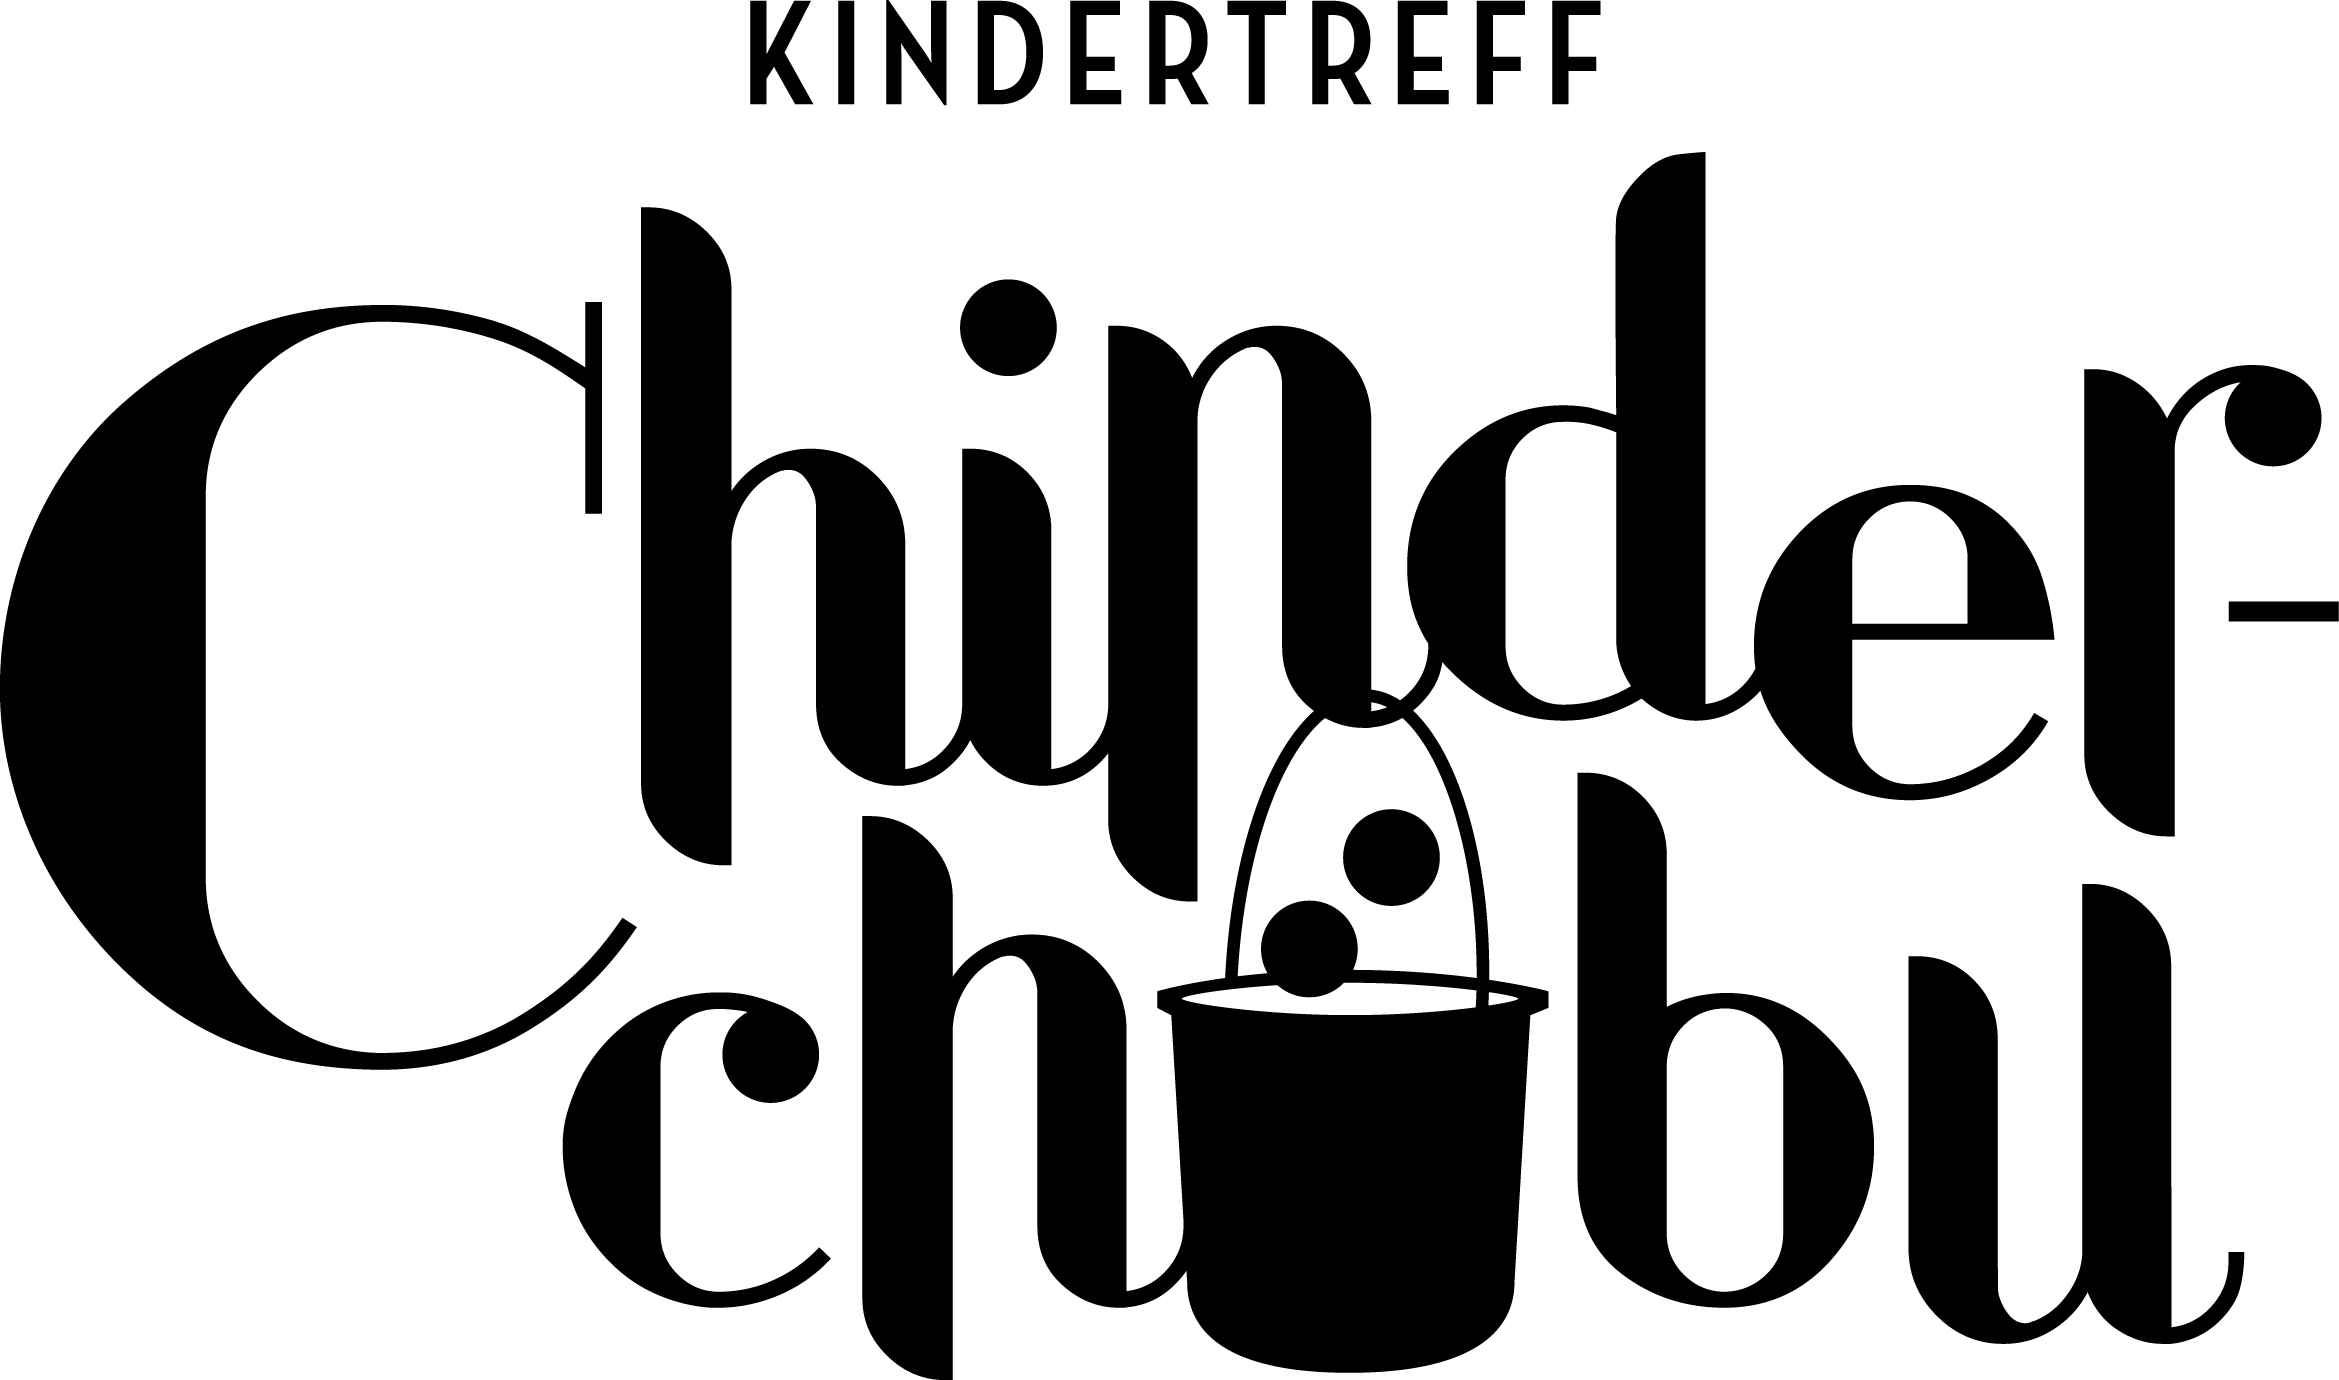 Chinderchuebu_Logo_klein.jpg